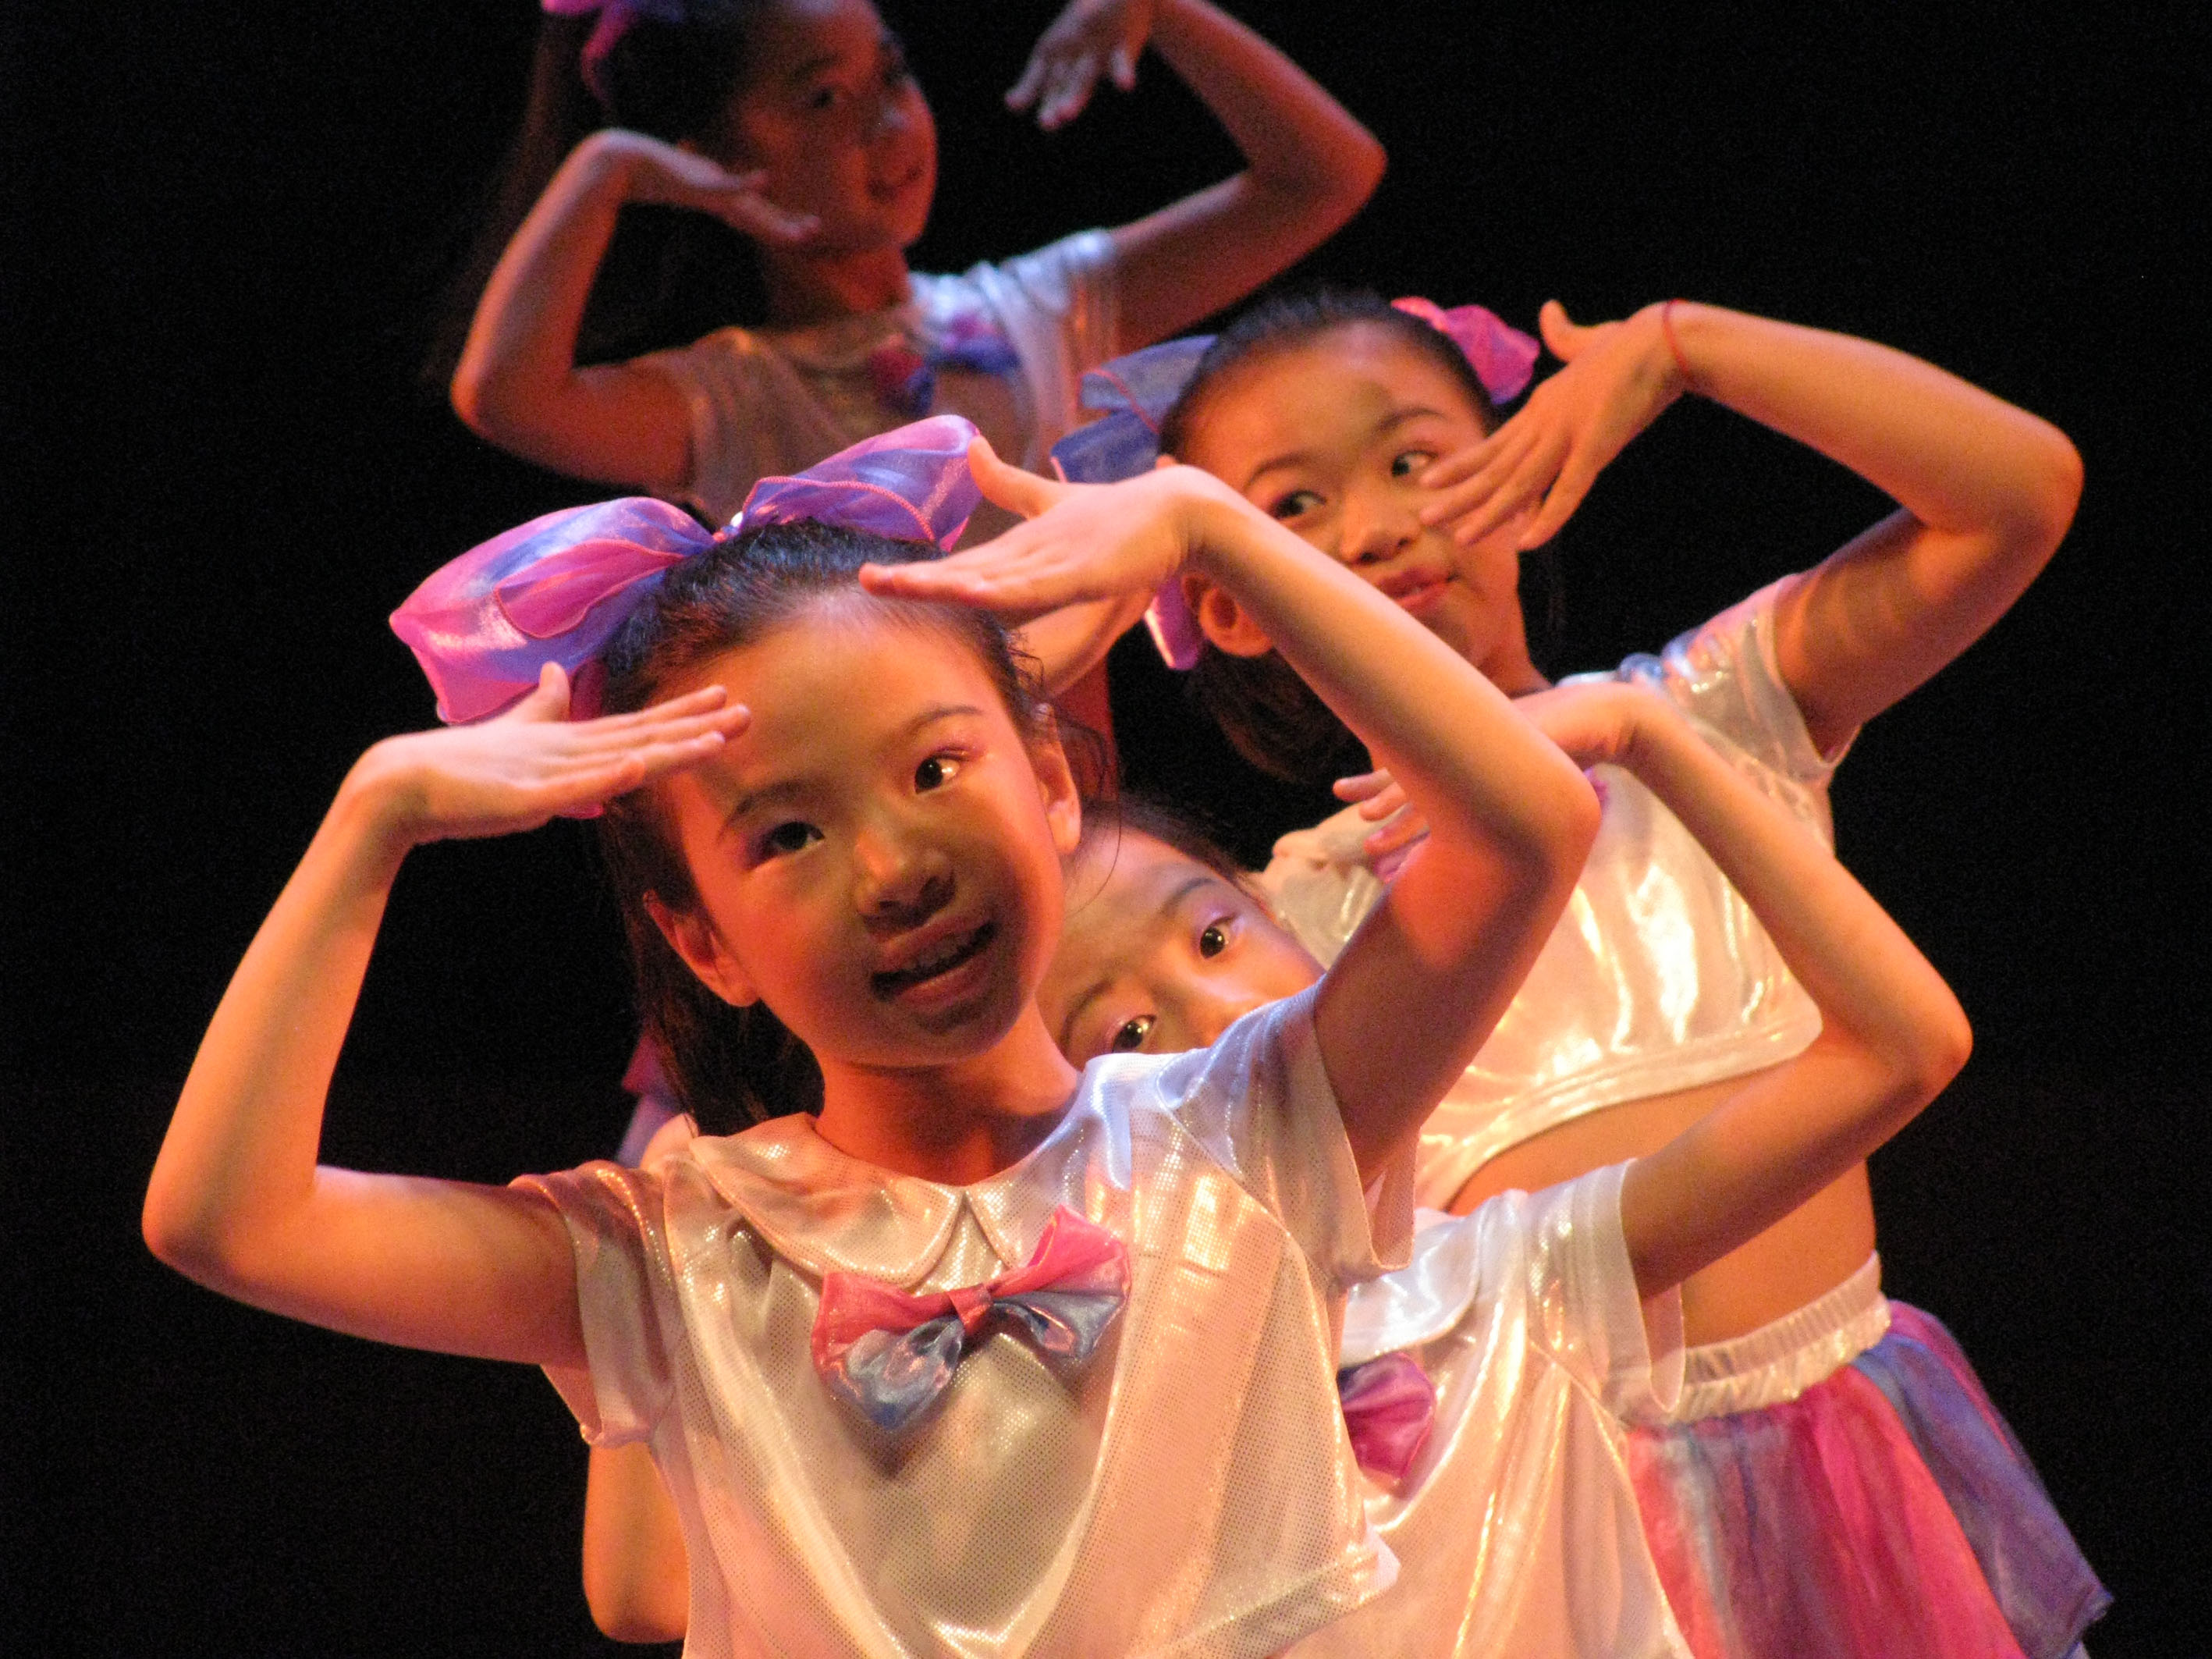 即享照片回顾玖叁街舞国泰艺术中心年度大秀 小朋友们个性乔装舞出精彩